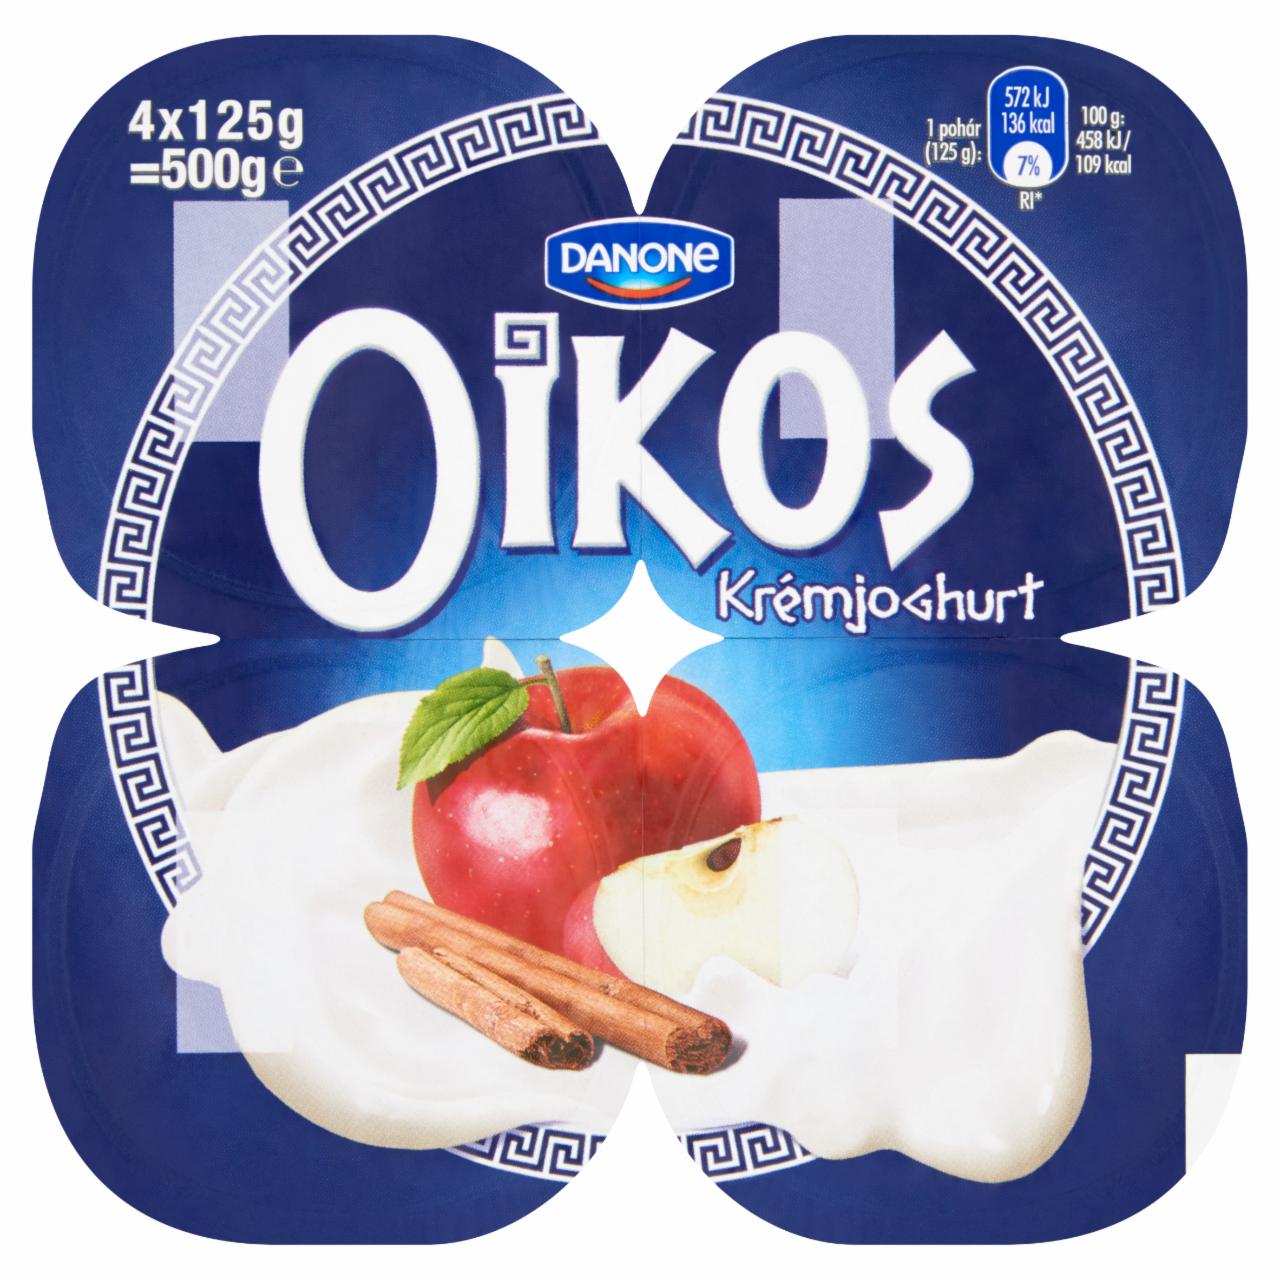 Képek - Danone Oikos Görög almás-fahéjas élőflórás krémjoghurt 4 x 125 g